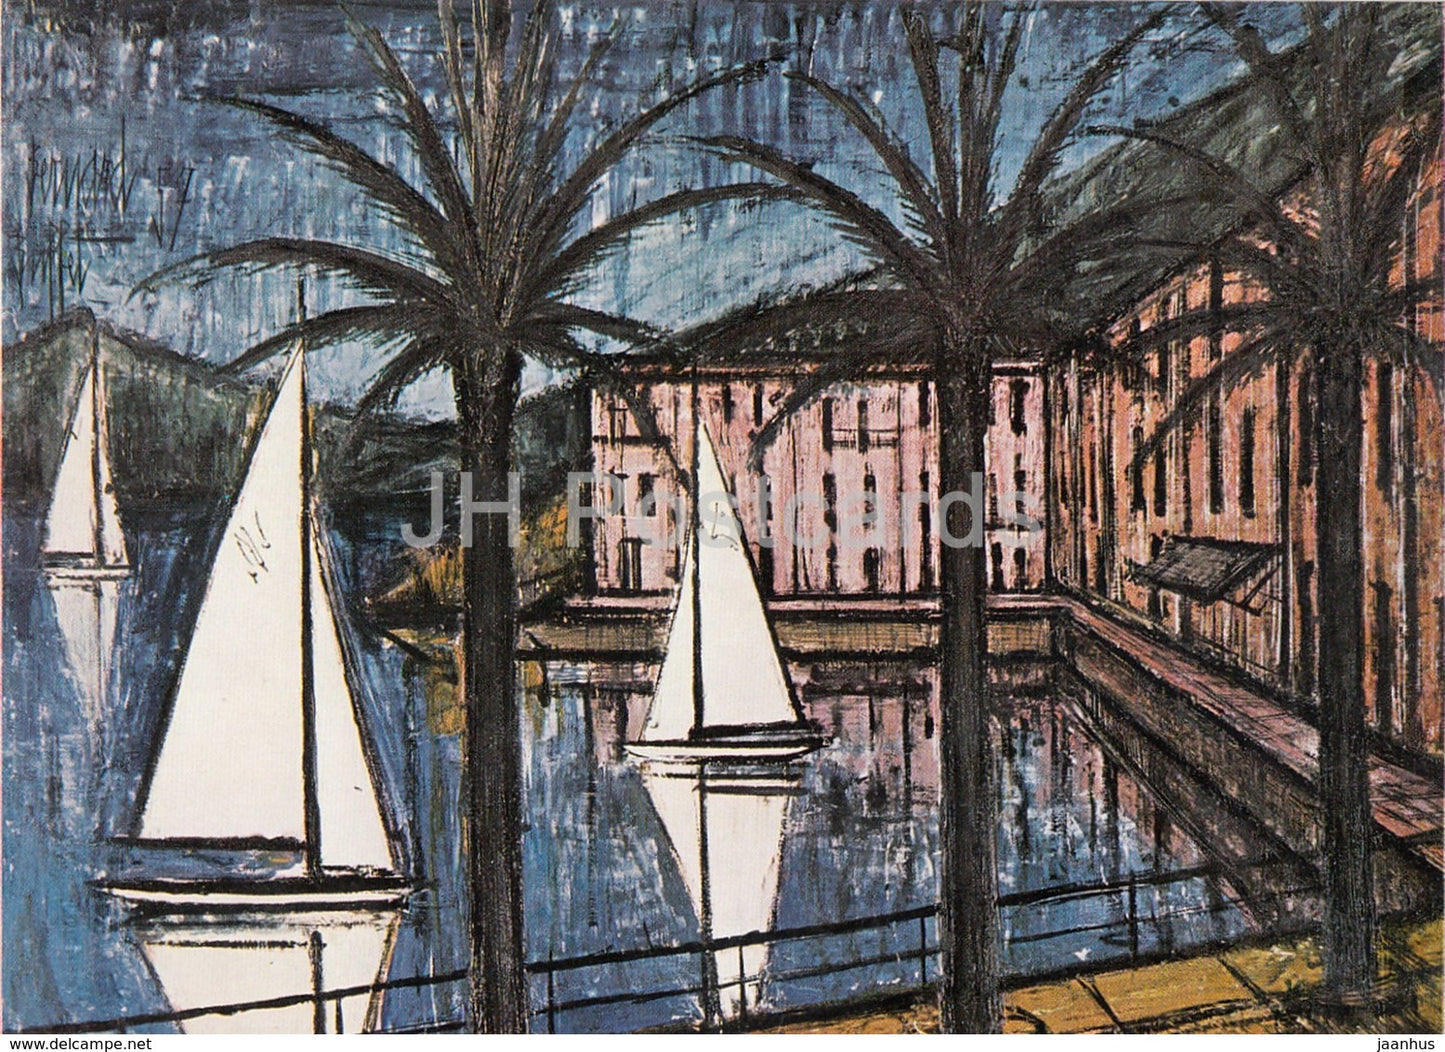 painting by Bernard Buffet - Port de Beaulieu , 1957 - French art - 1961 - France - unused - JH Postcards